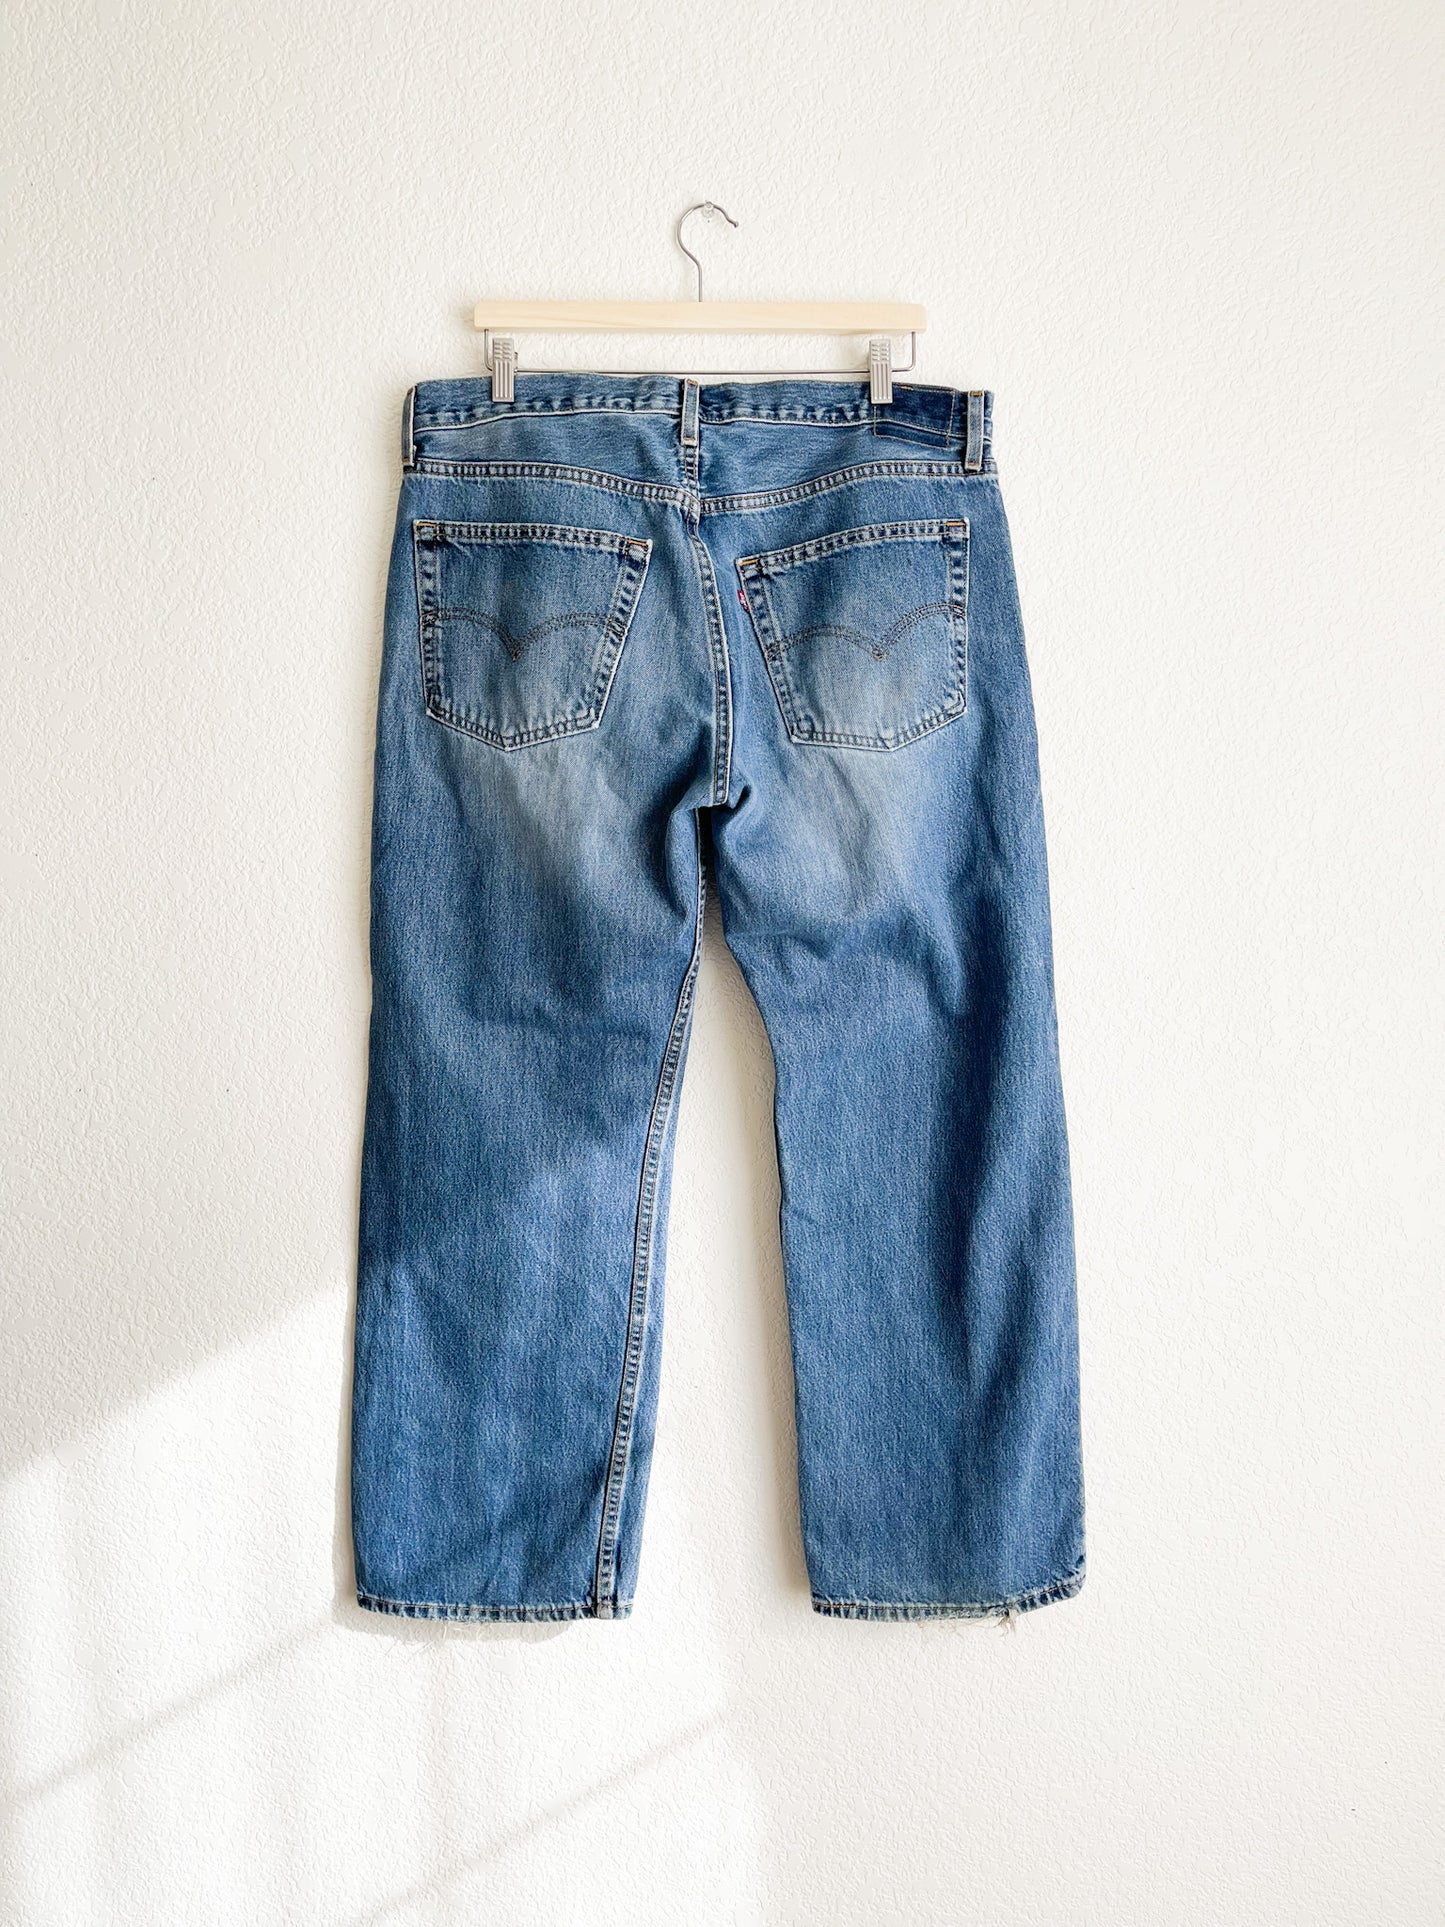 Vintage Levi's 529 Jeans - 38" Waist